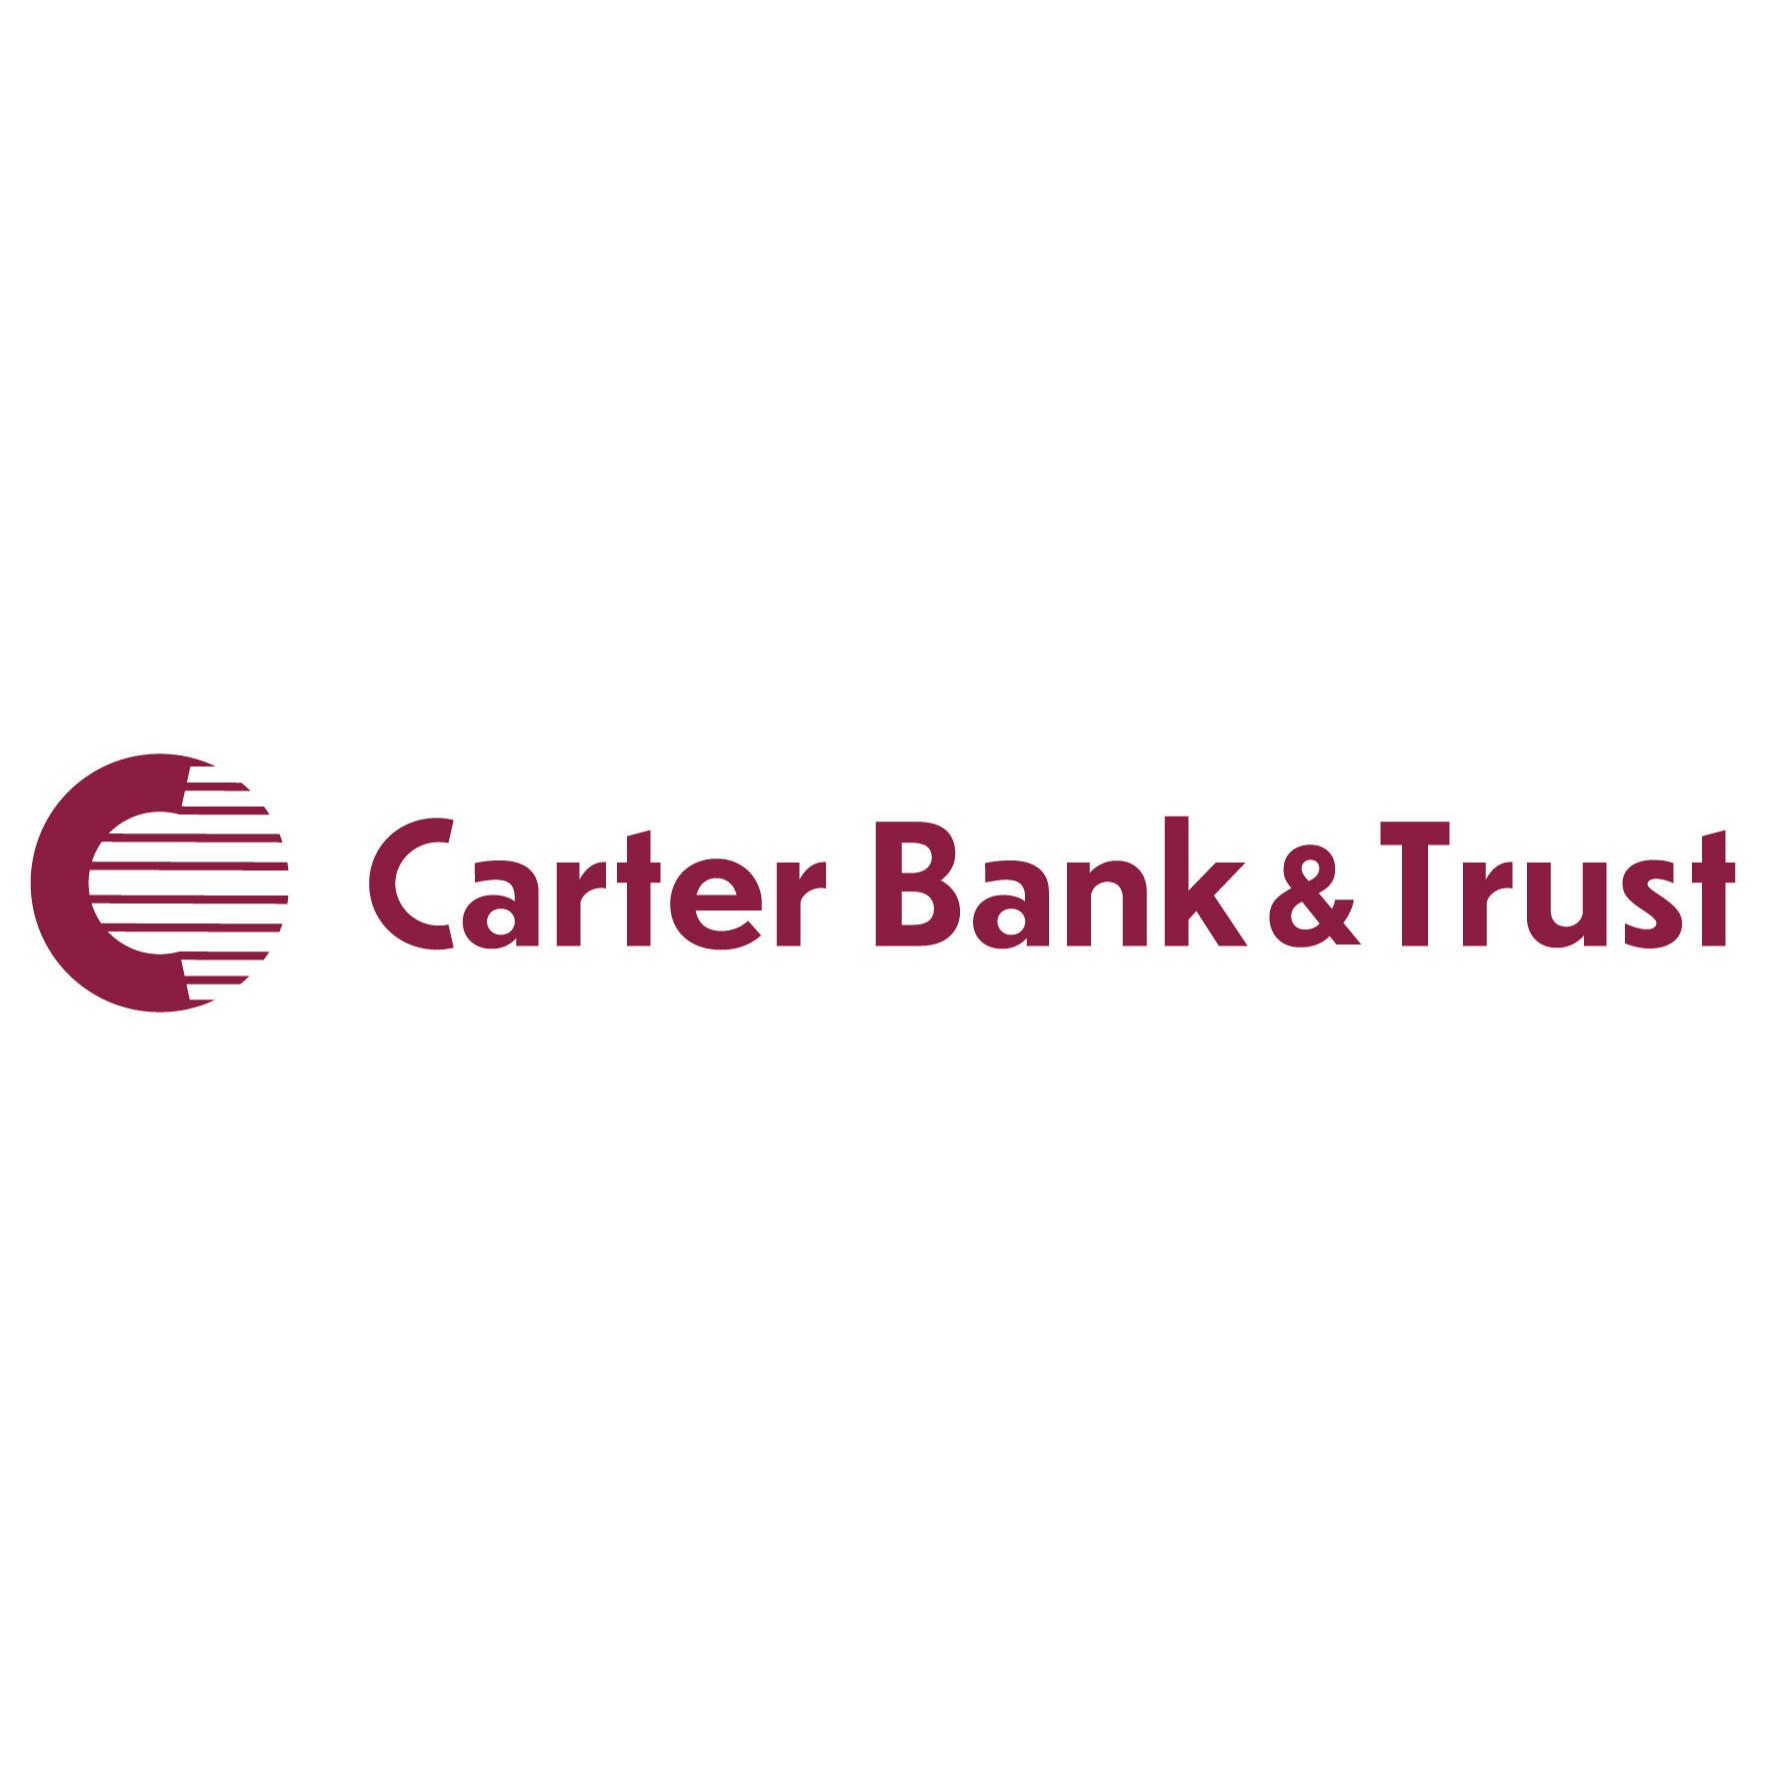 Carter Bank & Trust - Pulaski, VA 24301 - (540)994-9617 | ShowMeLocal.com